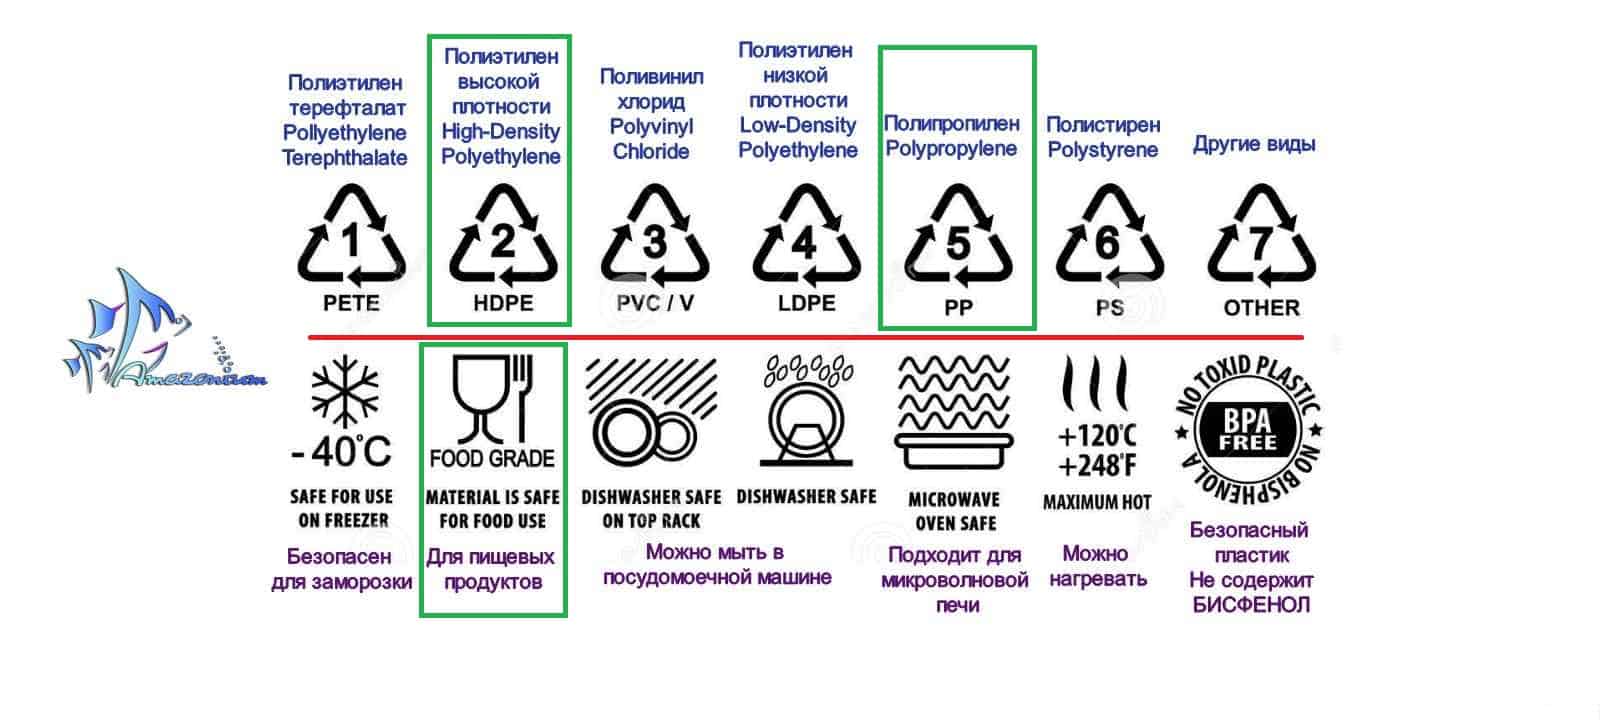 Обозначение на пластиковой посуде: расшифровка знаков для микроволновки, пищевых продуктов и воды